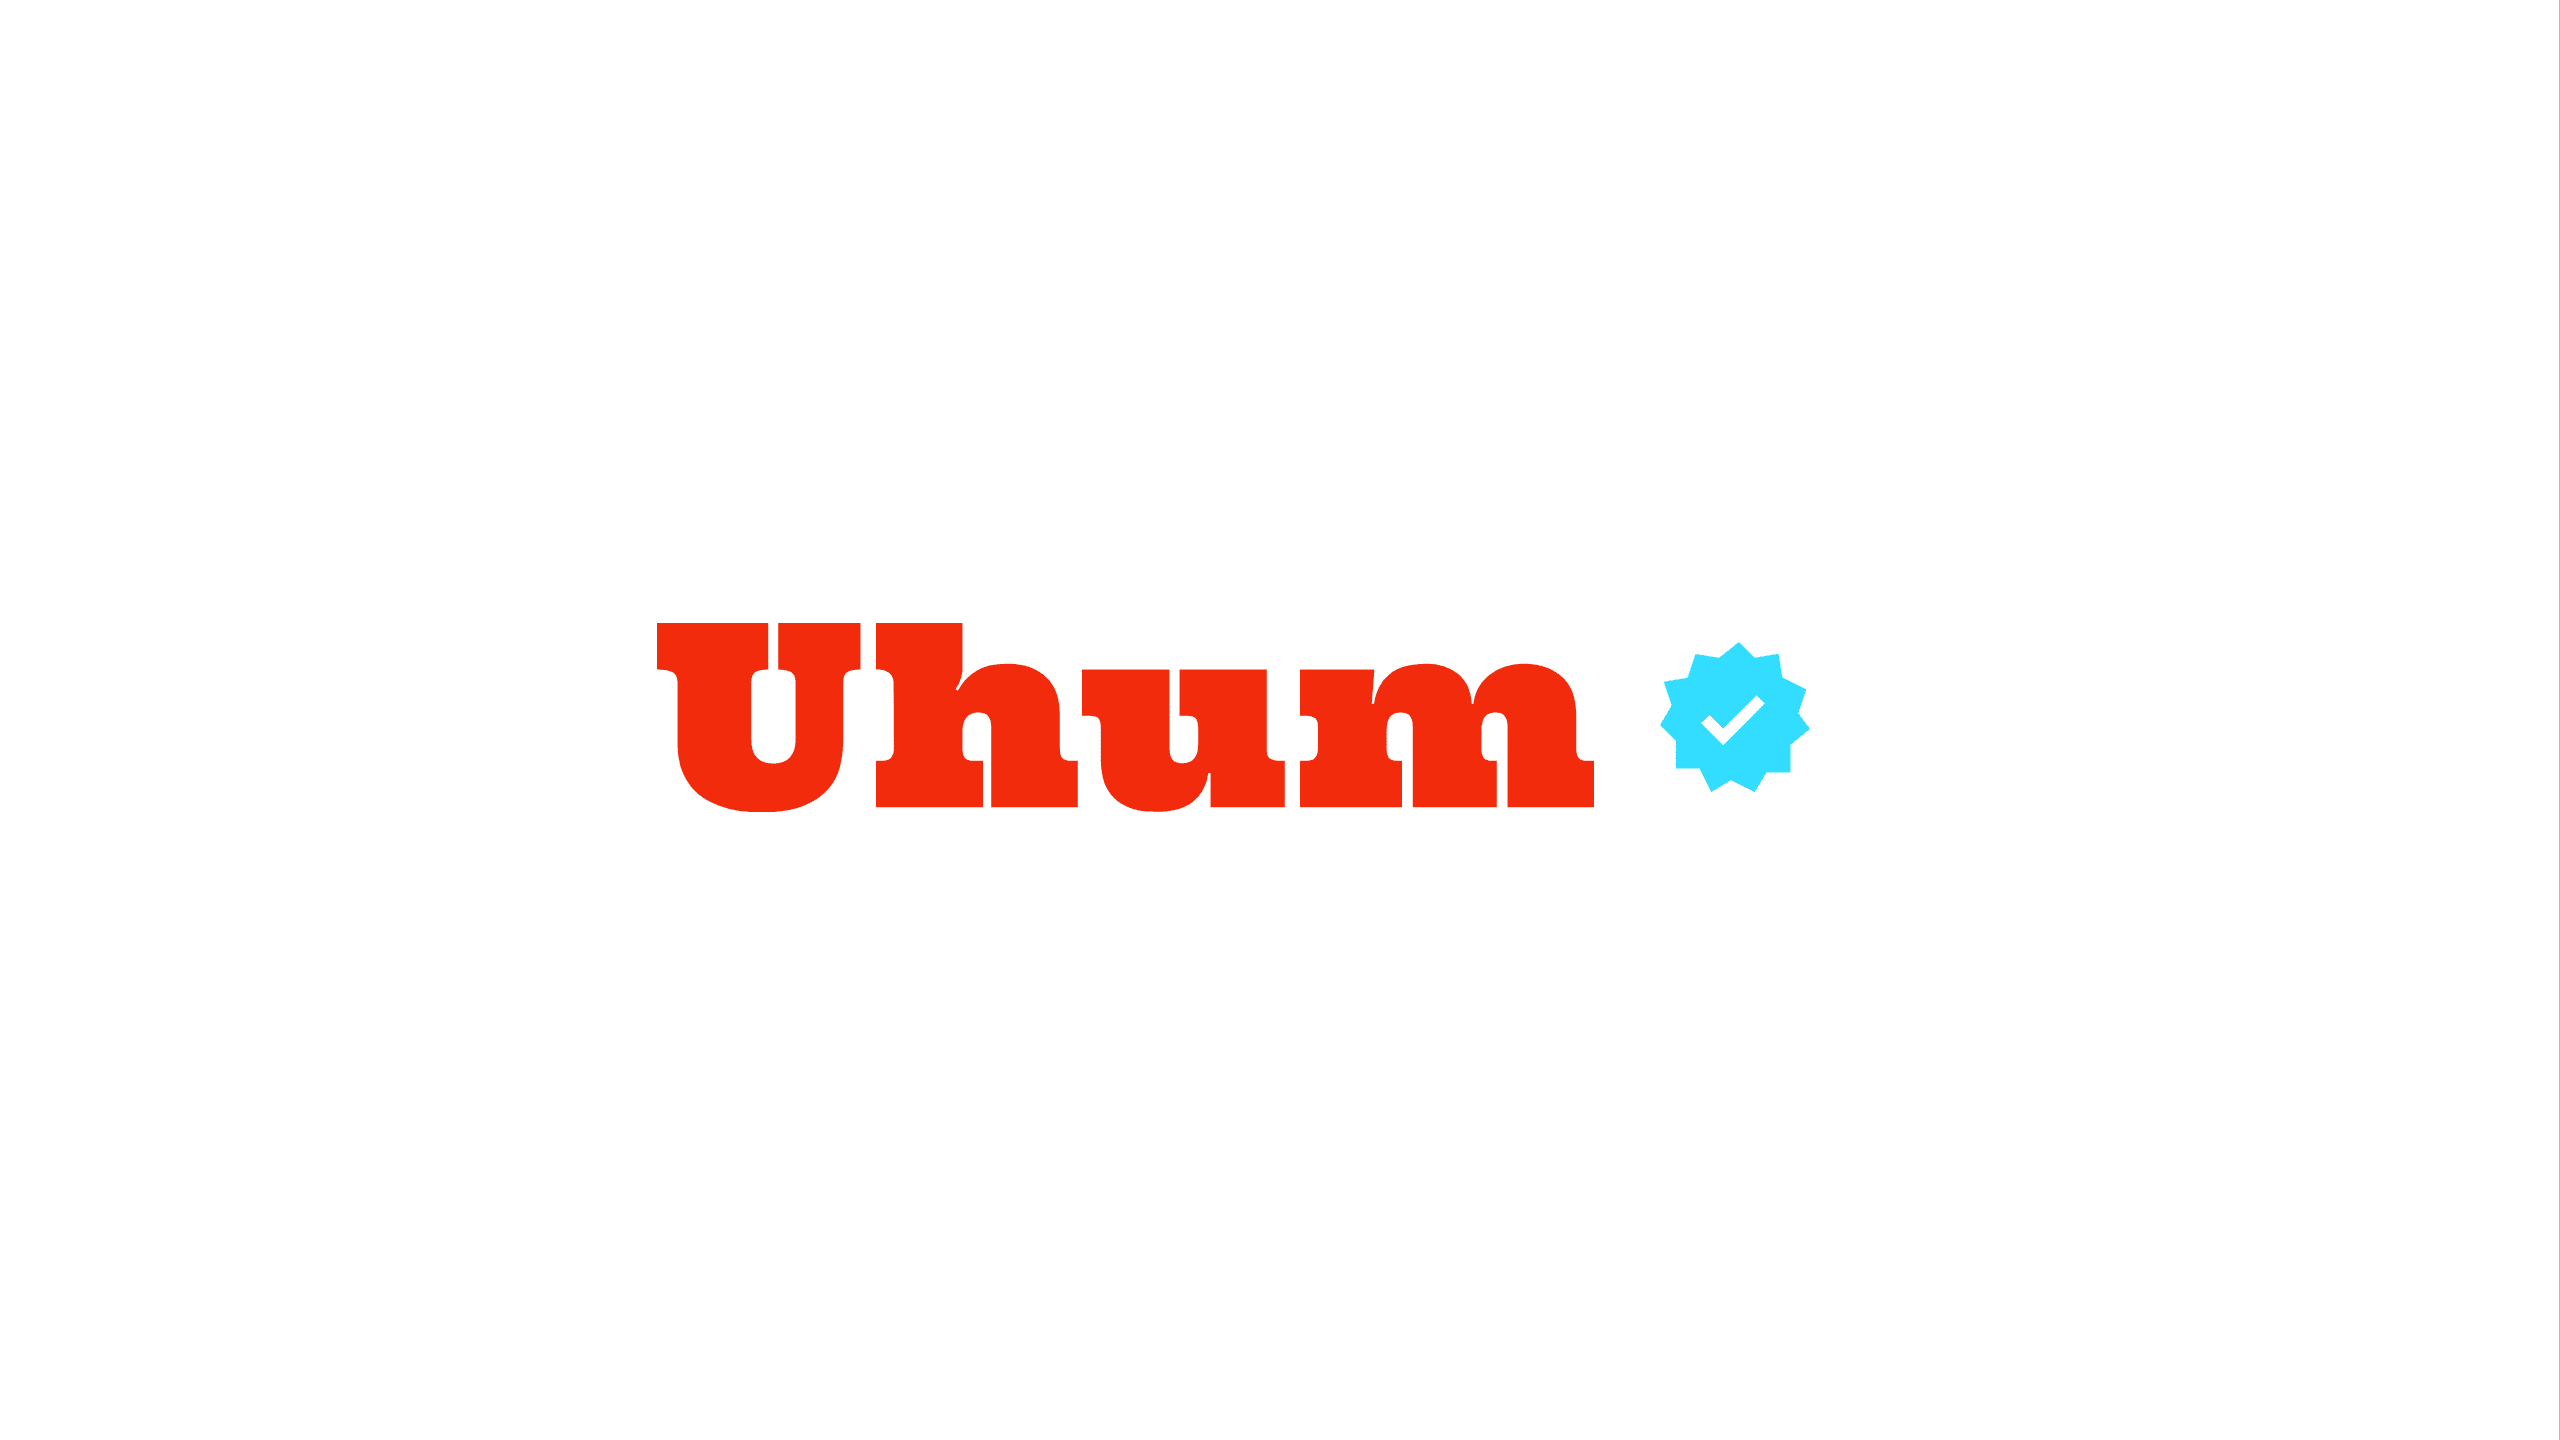 Uhum